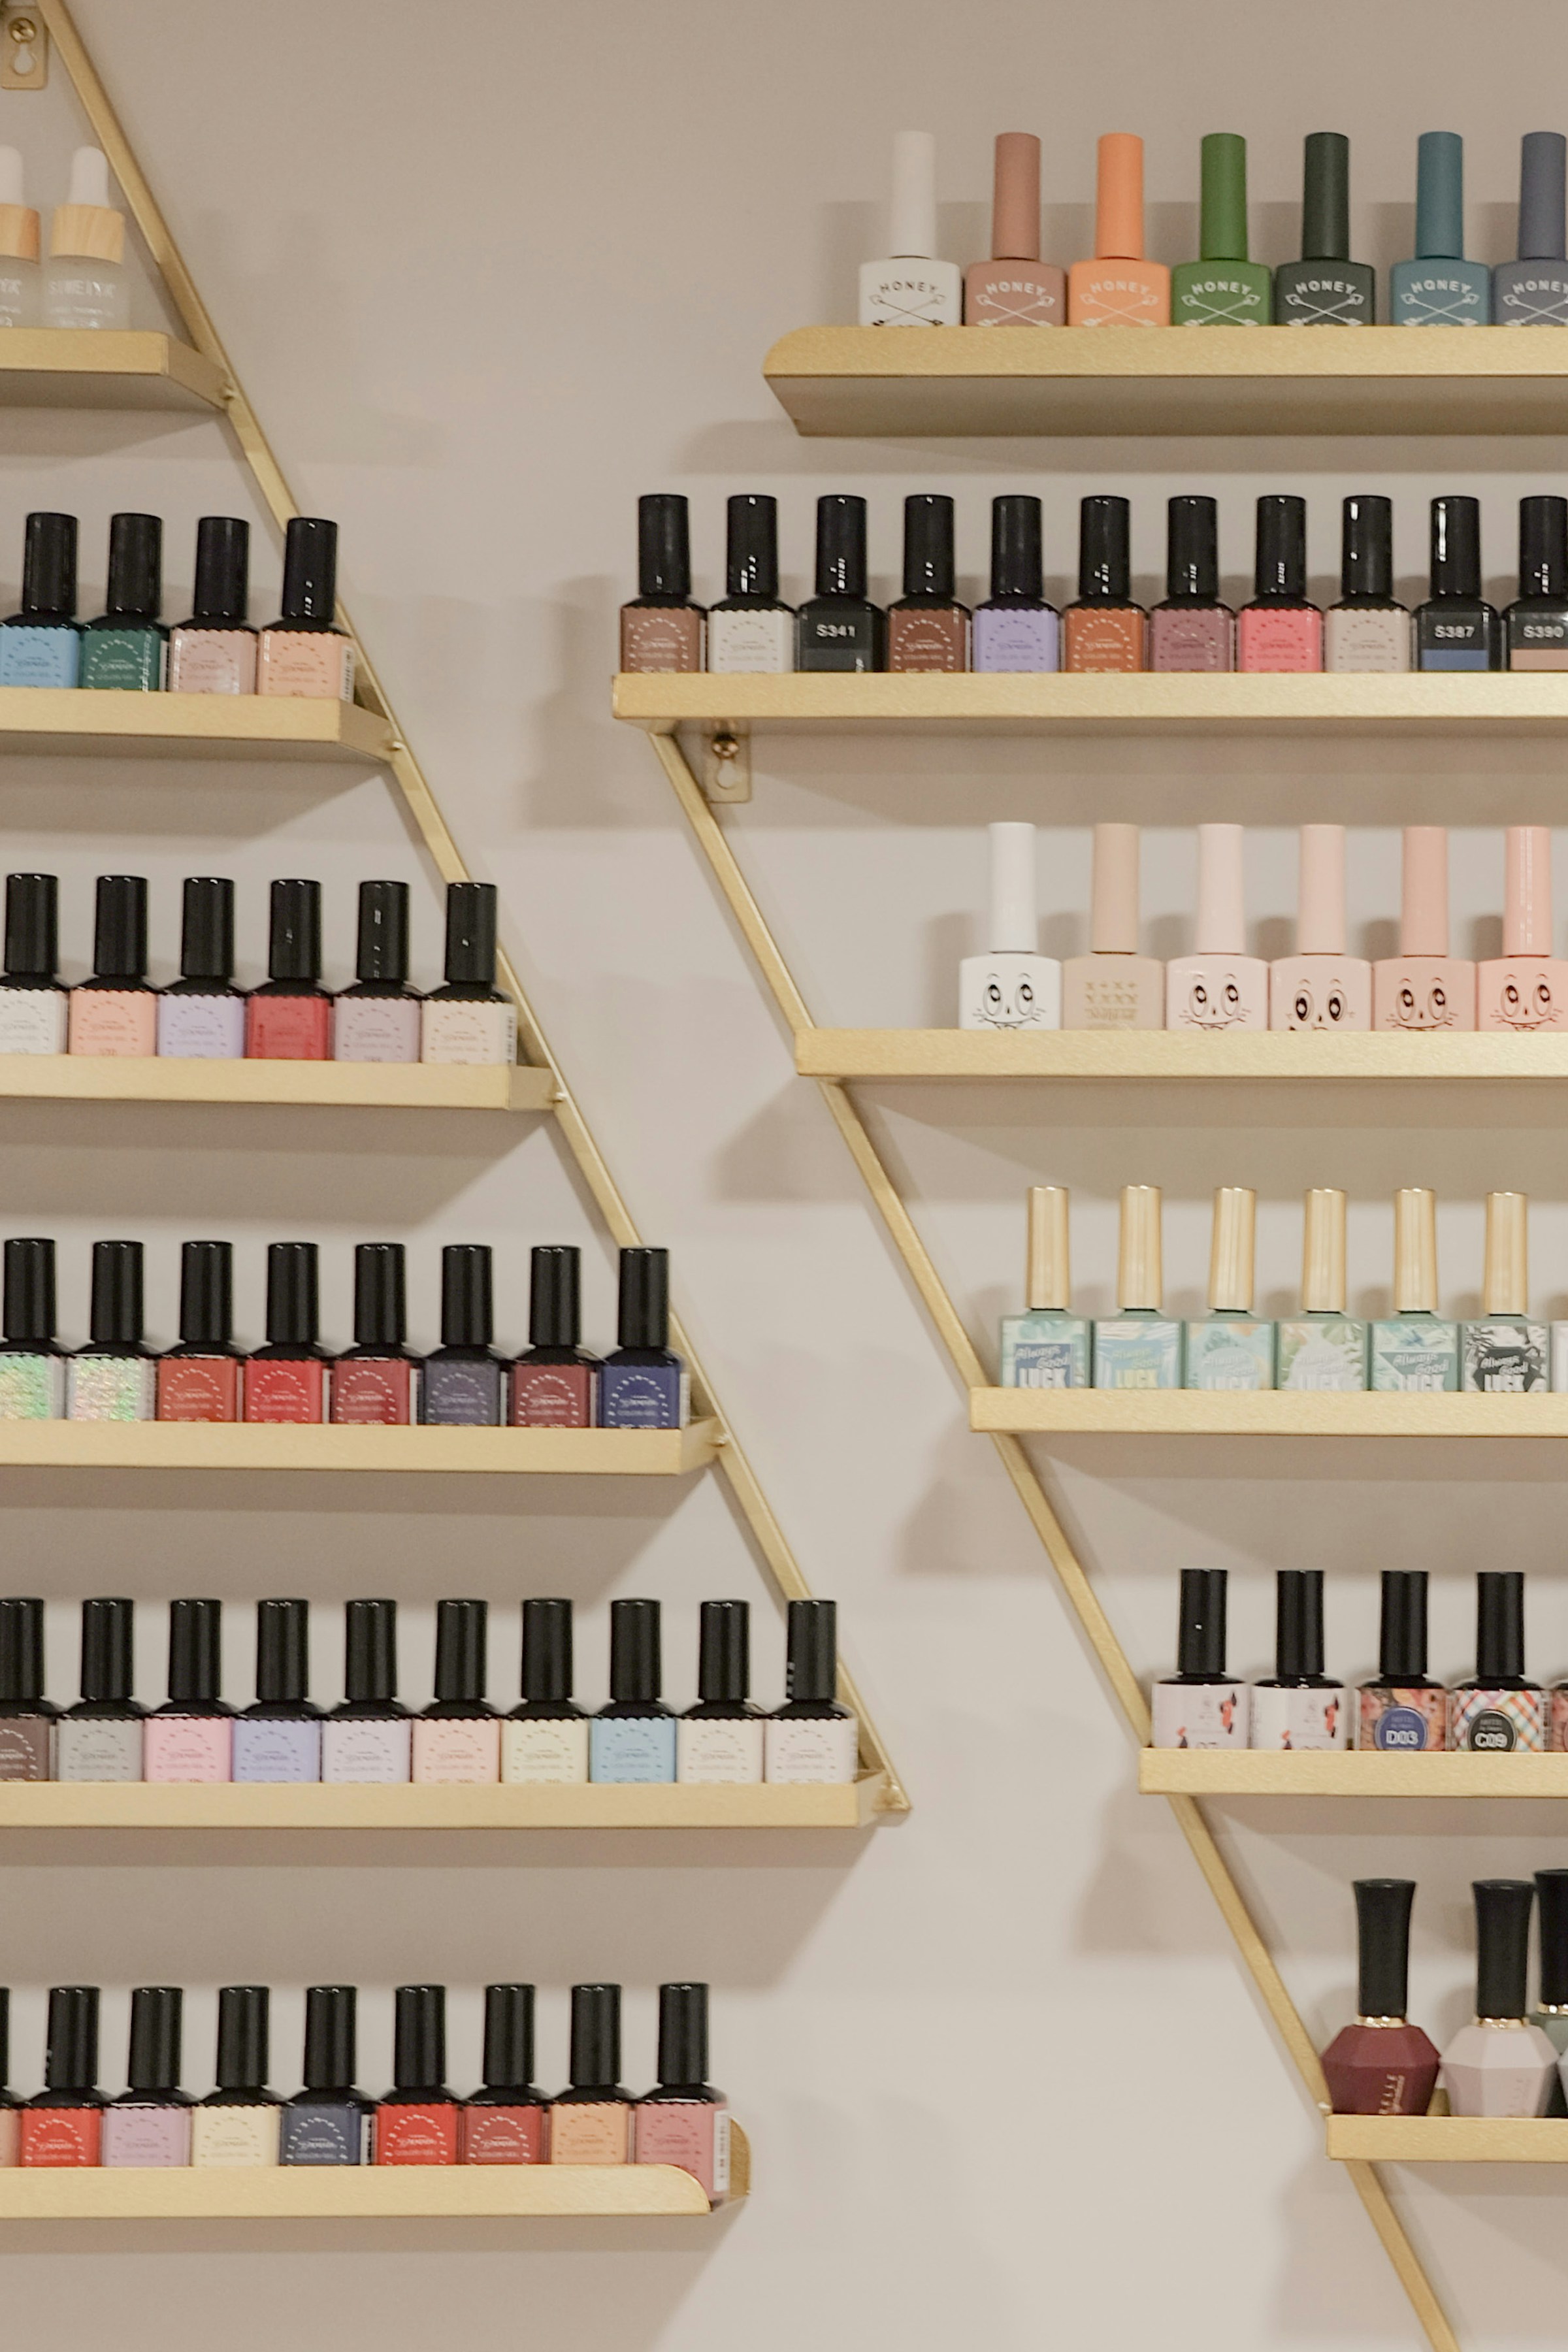 Différentes couleurs de vernis à ongles sur des étagères | Source : Unsplash